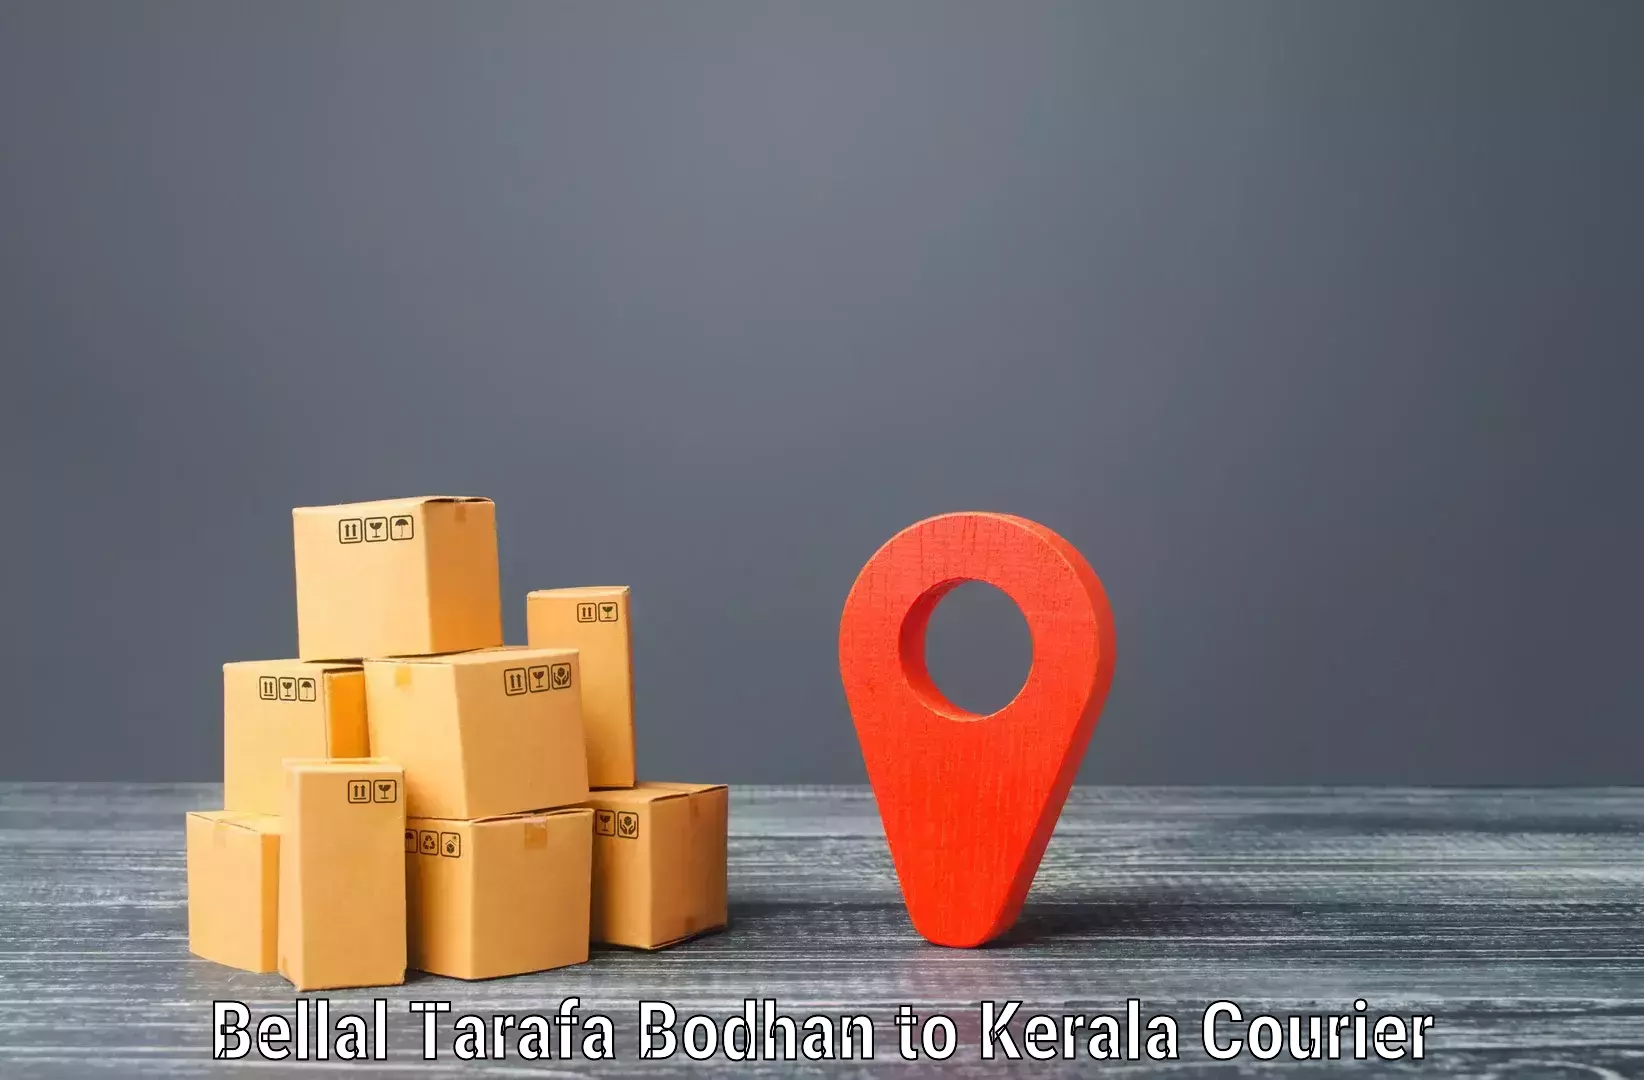 Large package courier Bellal Tarafa Bodhan to Ponnani